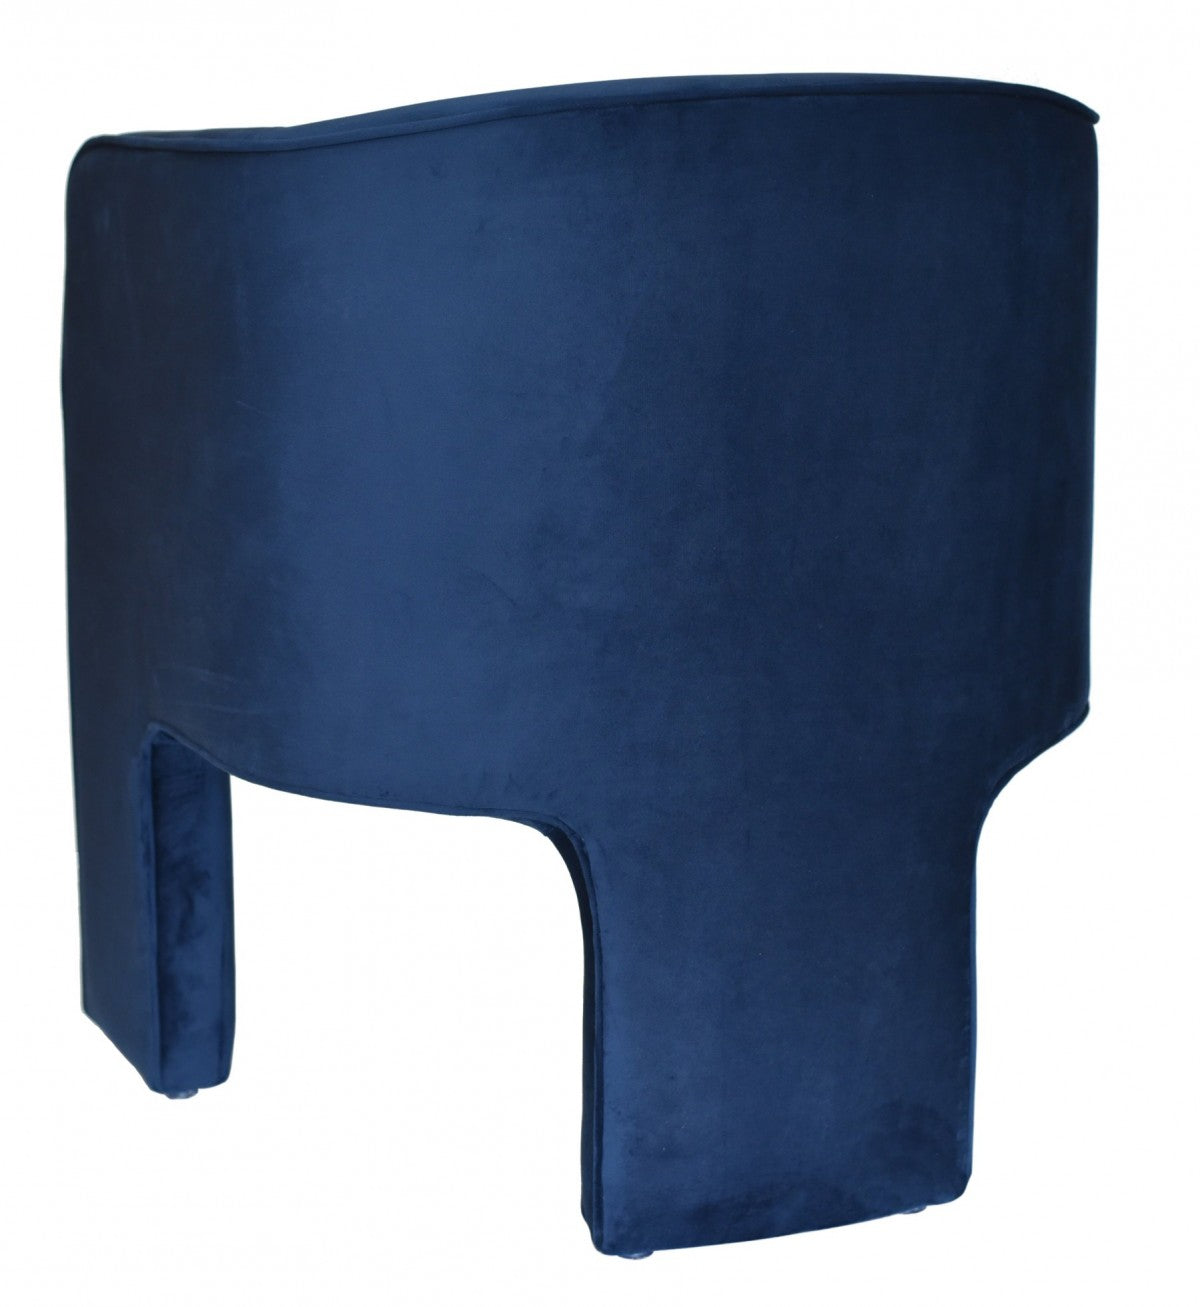 Arlia Modern Blue Velvet Accent Chair